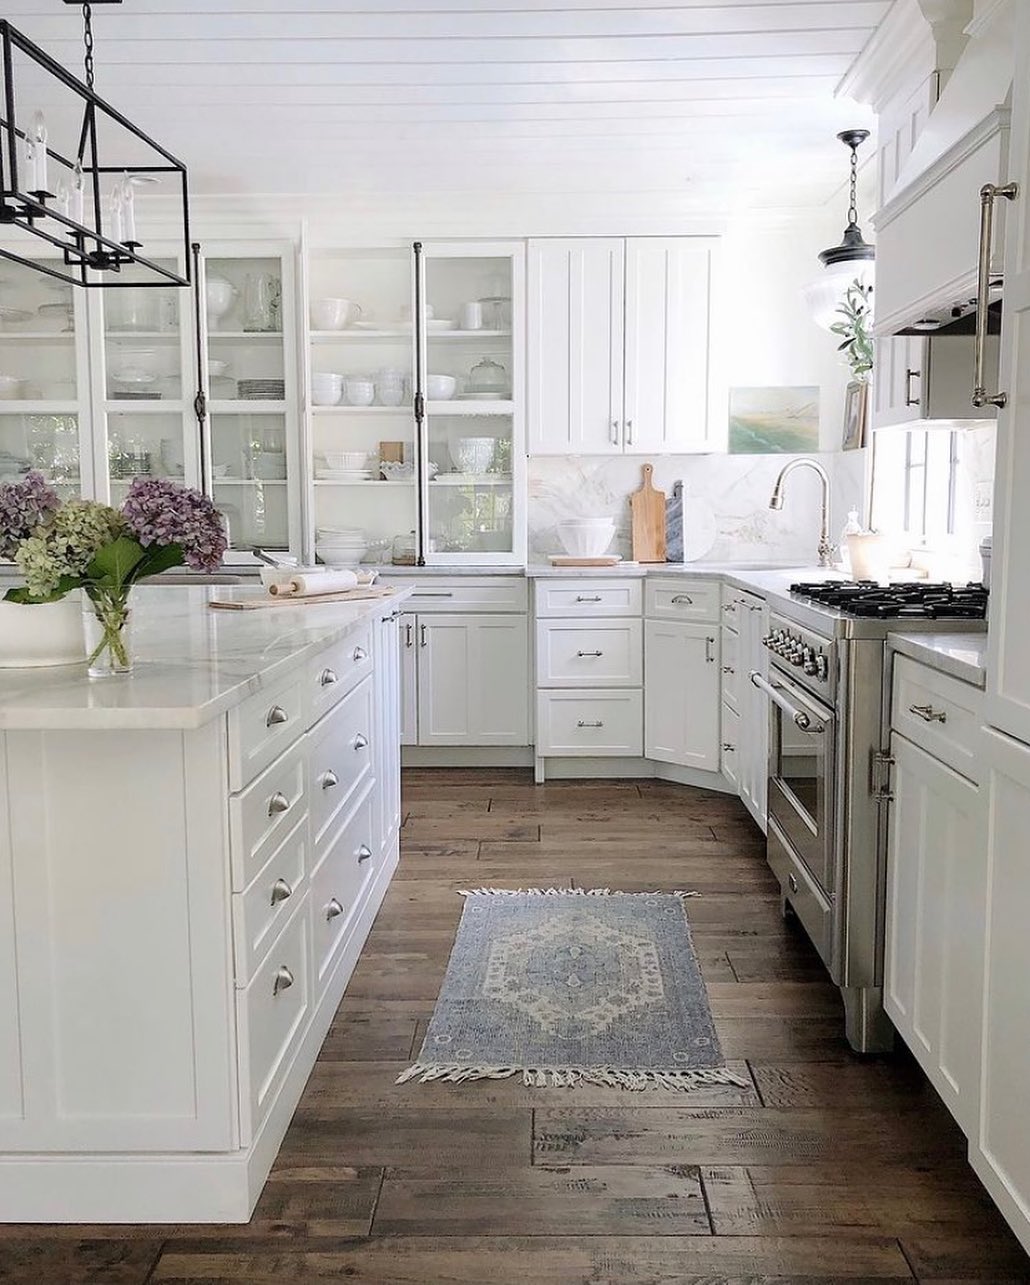 Dark brown hardwood flooring in a white kitchen. Photo by Instagram user @ellyathome